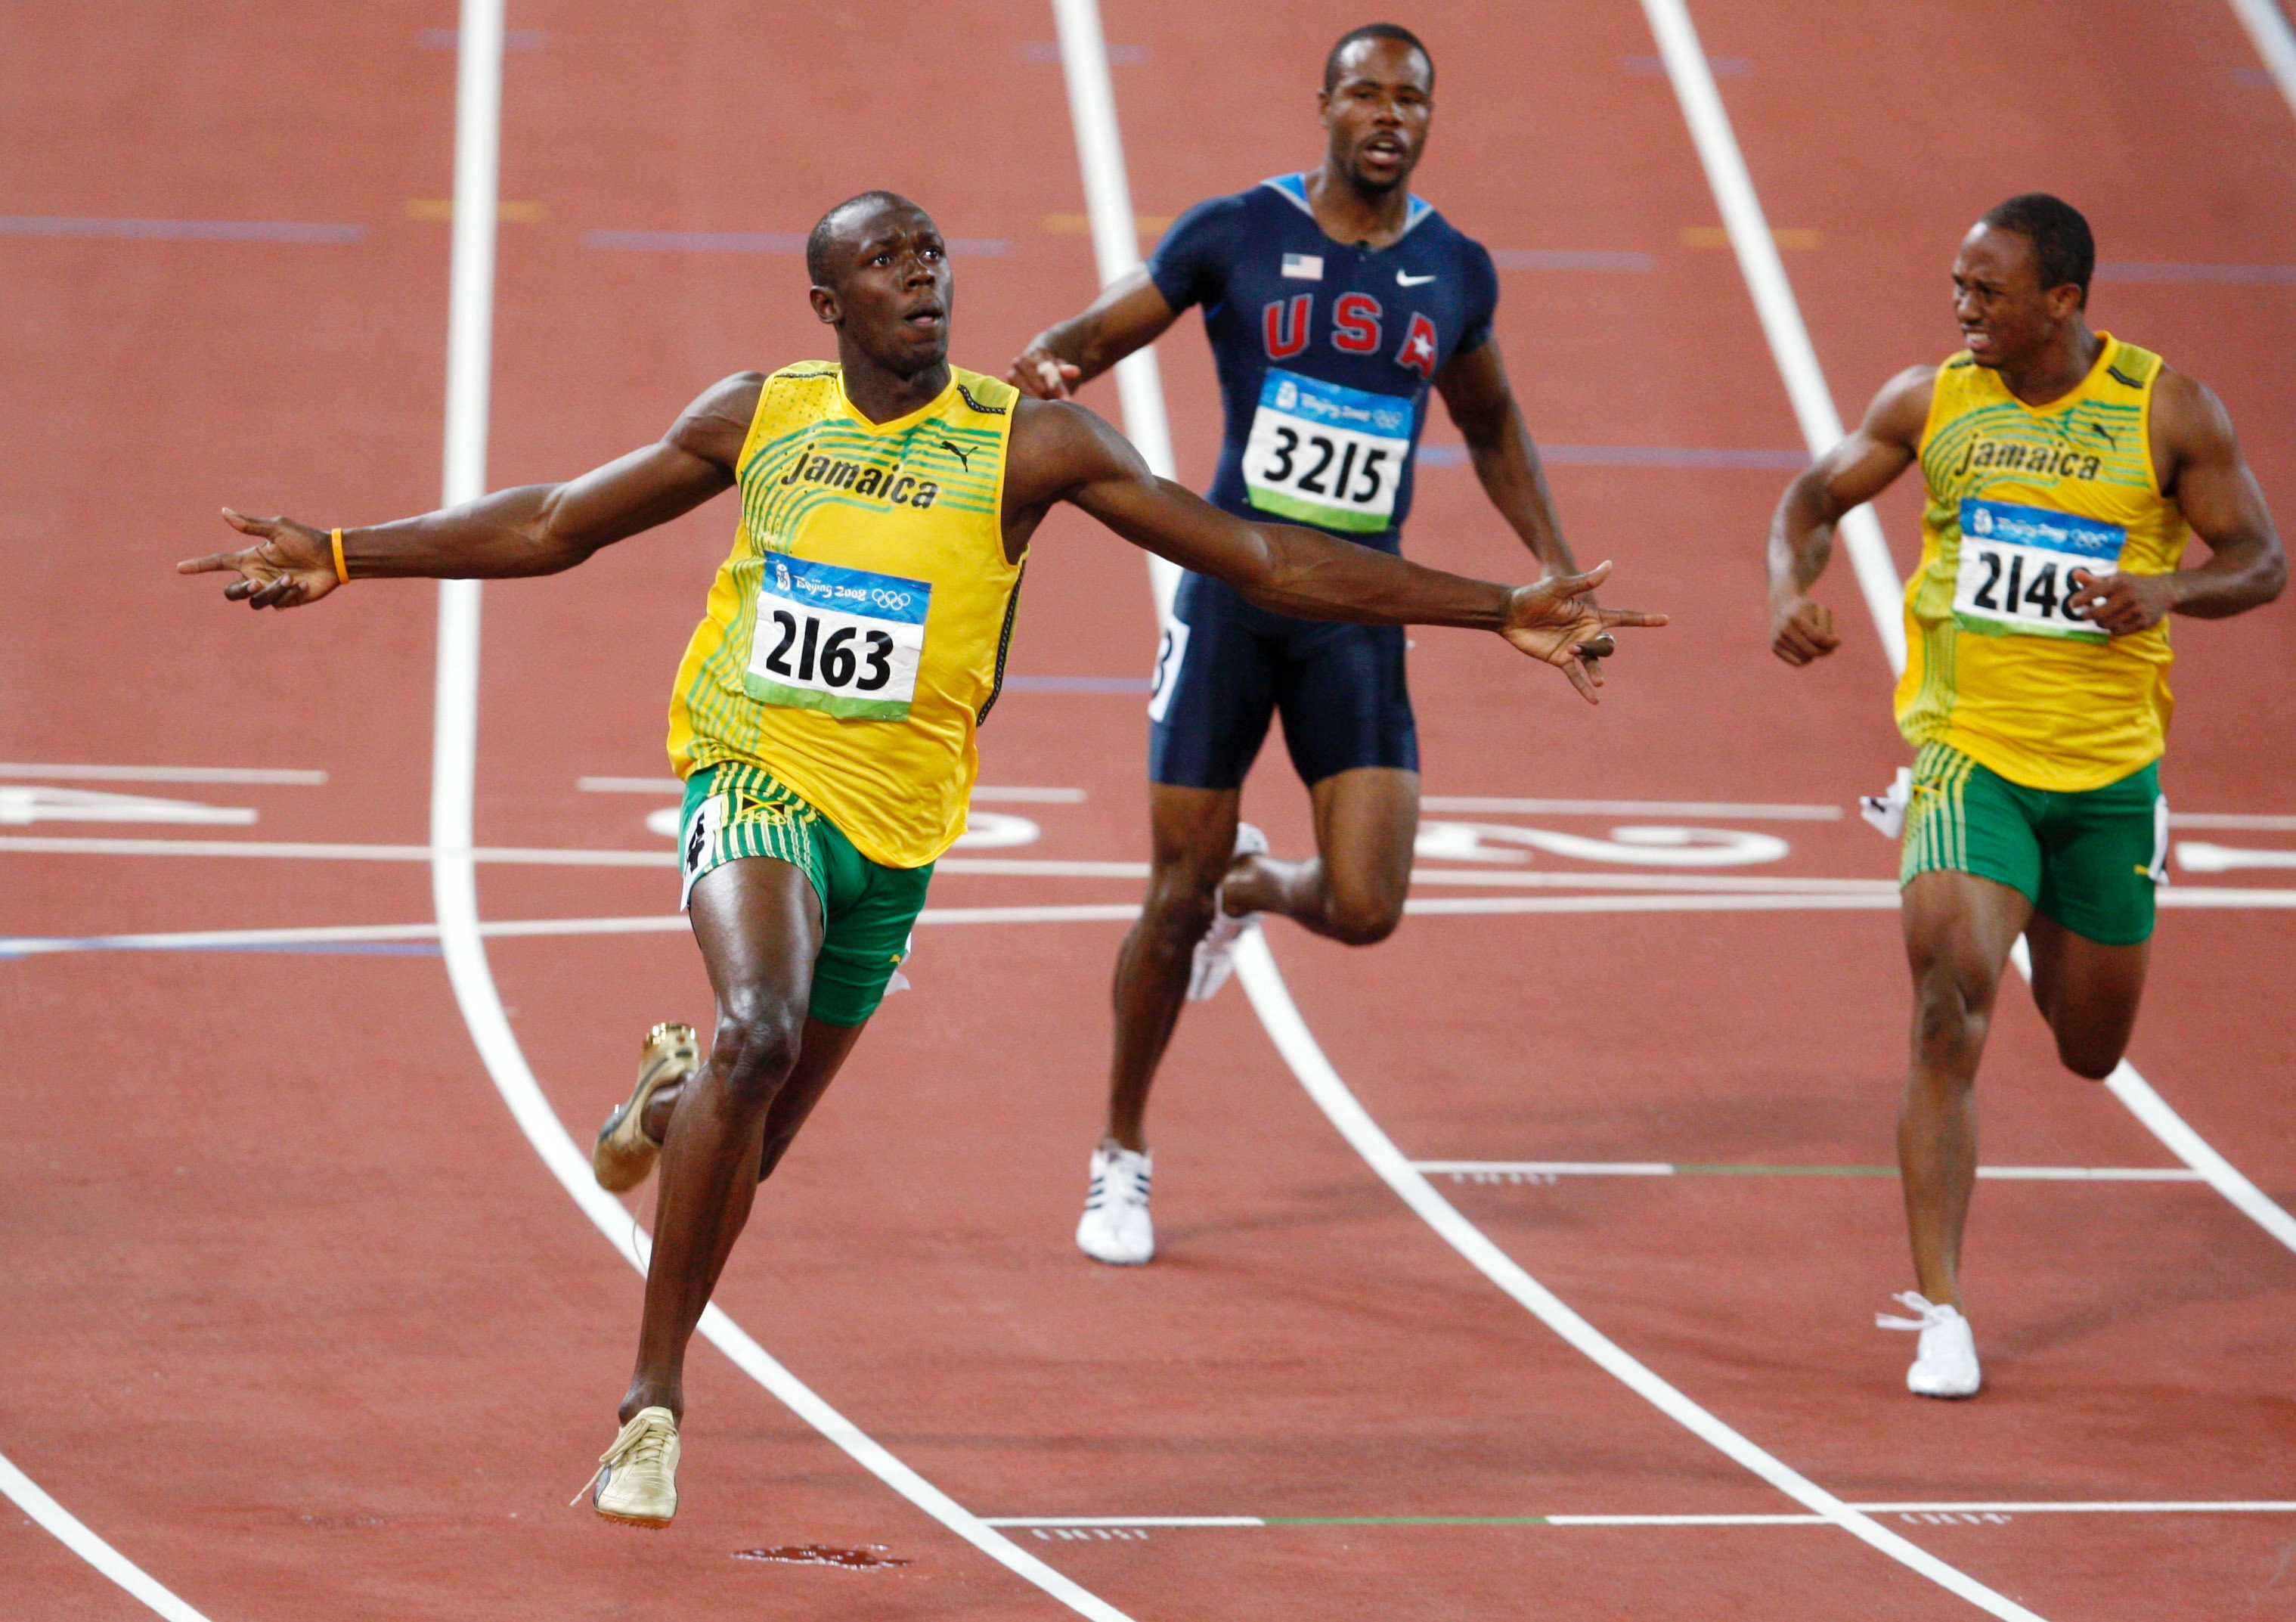 Скорость бега игра. Футбол на Олимпийских играх 2008. Usain Bolt 2008 Olympics go Jamaica. Usain Bolt Olympics. Usain Bolt 2008 Olympics go Jamaica photos.